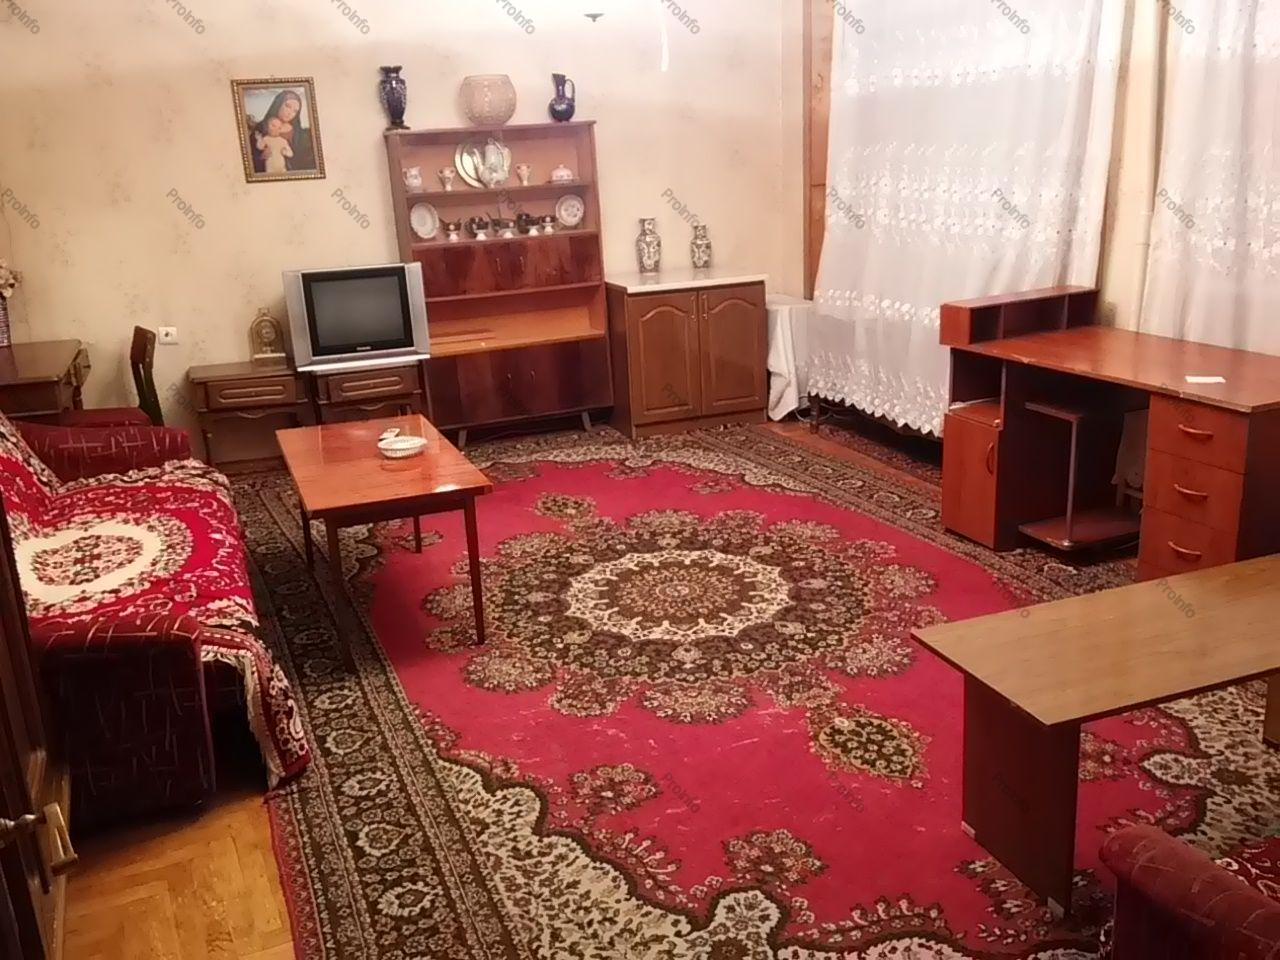 For Sale 1 room Apartments Yerevan, Arabkir, Komitas av.